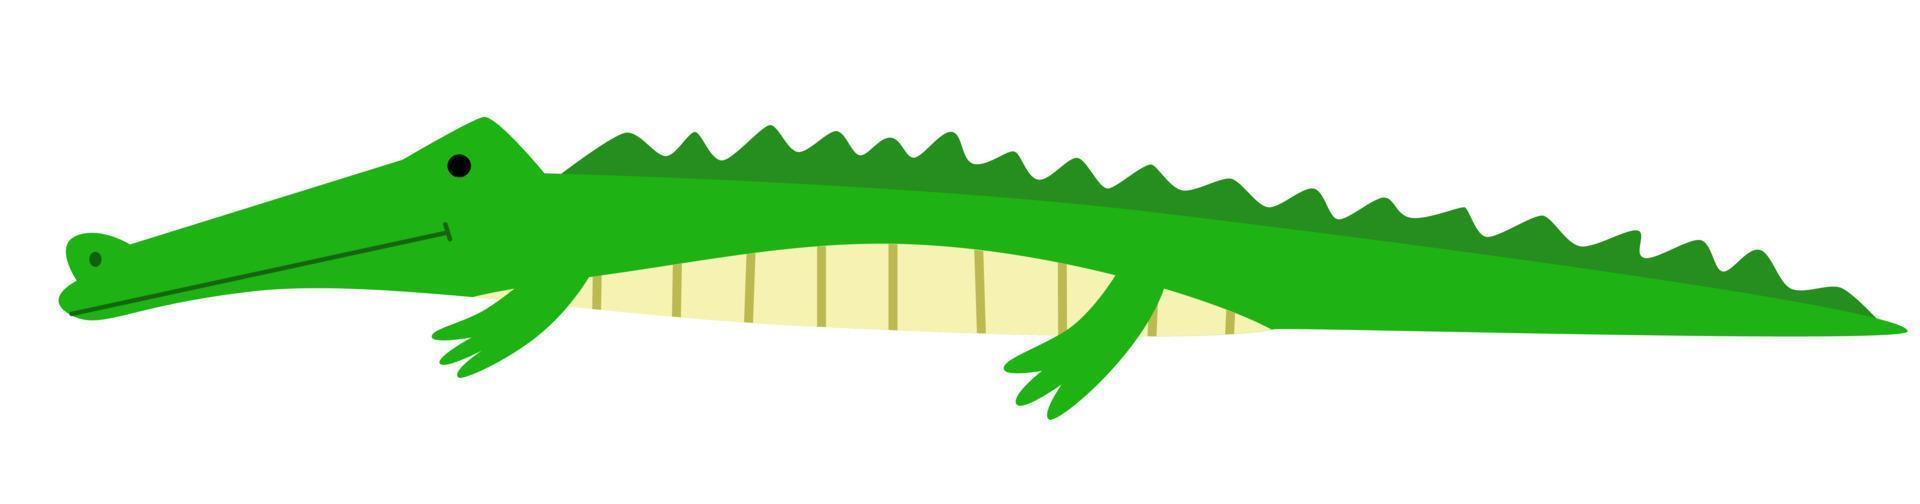 vectorillustratie van een krokodil in een vlakke stijl vector